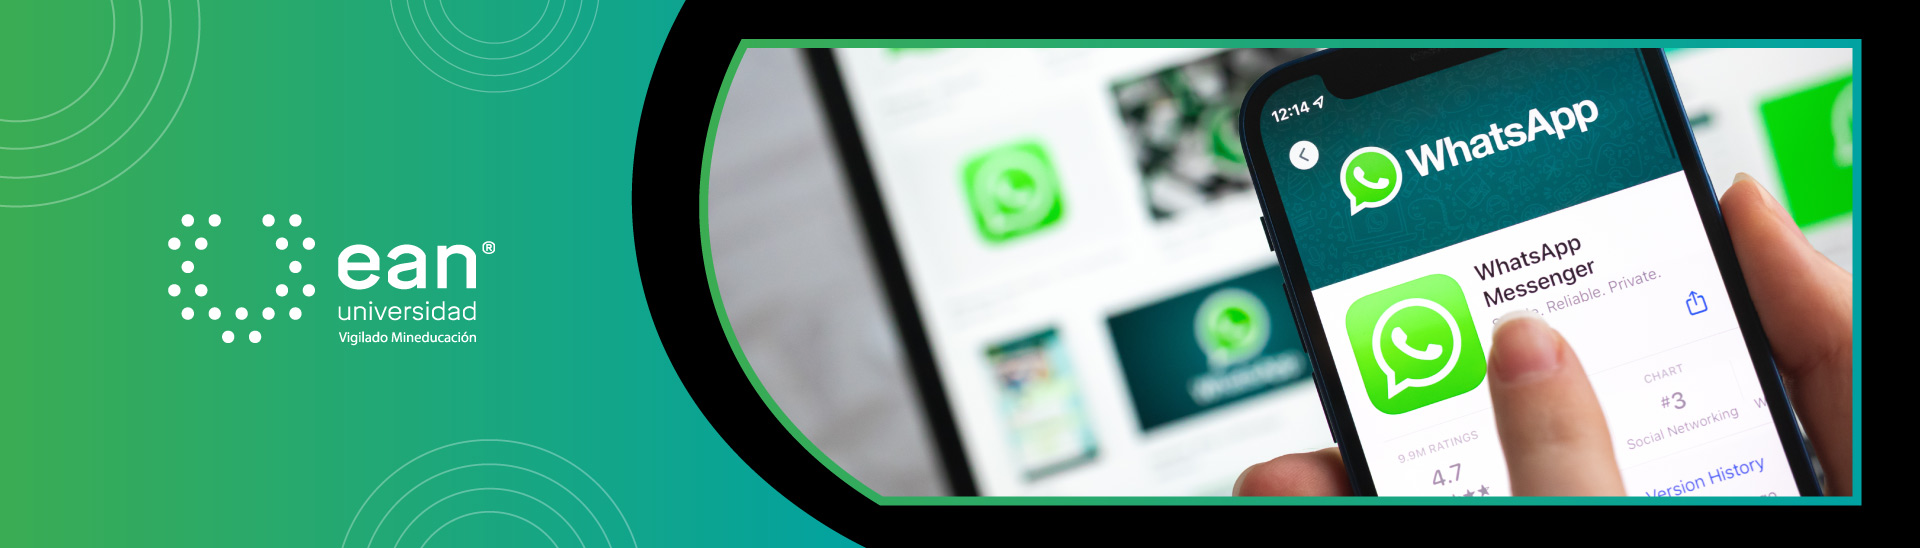 ¿Por qué WhatsApp es el medio de comunicación favorito? 